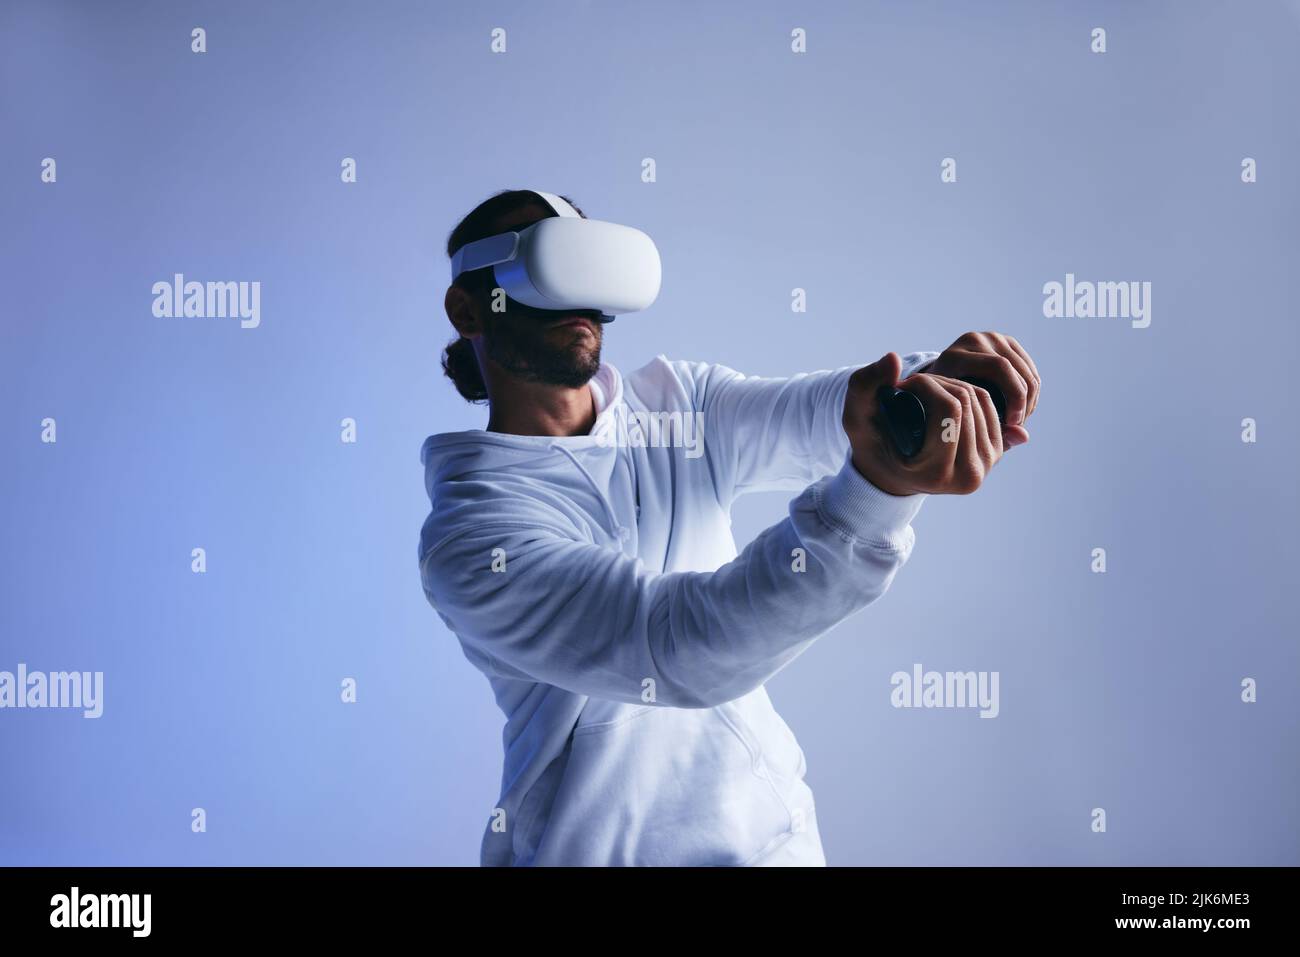 Hombre jugando un juego de cricket en realidad virtual. Joven deportivo bateando una pelota virtual con mandos de juego. Hombre joven activo explorando inmersi Foto de stock